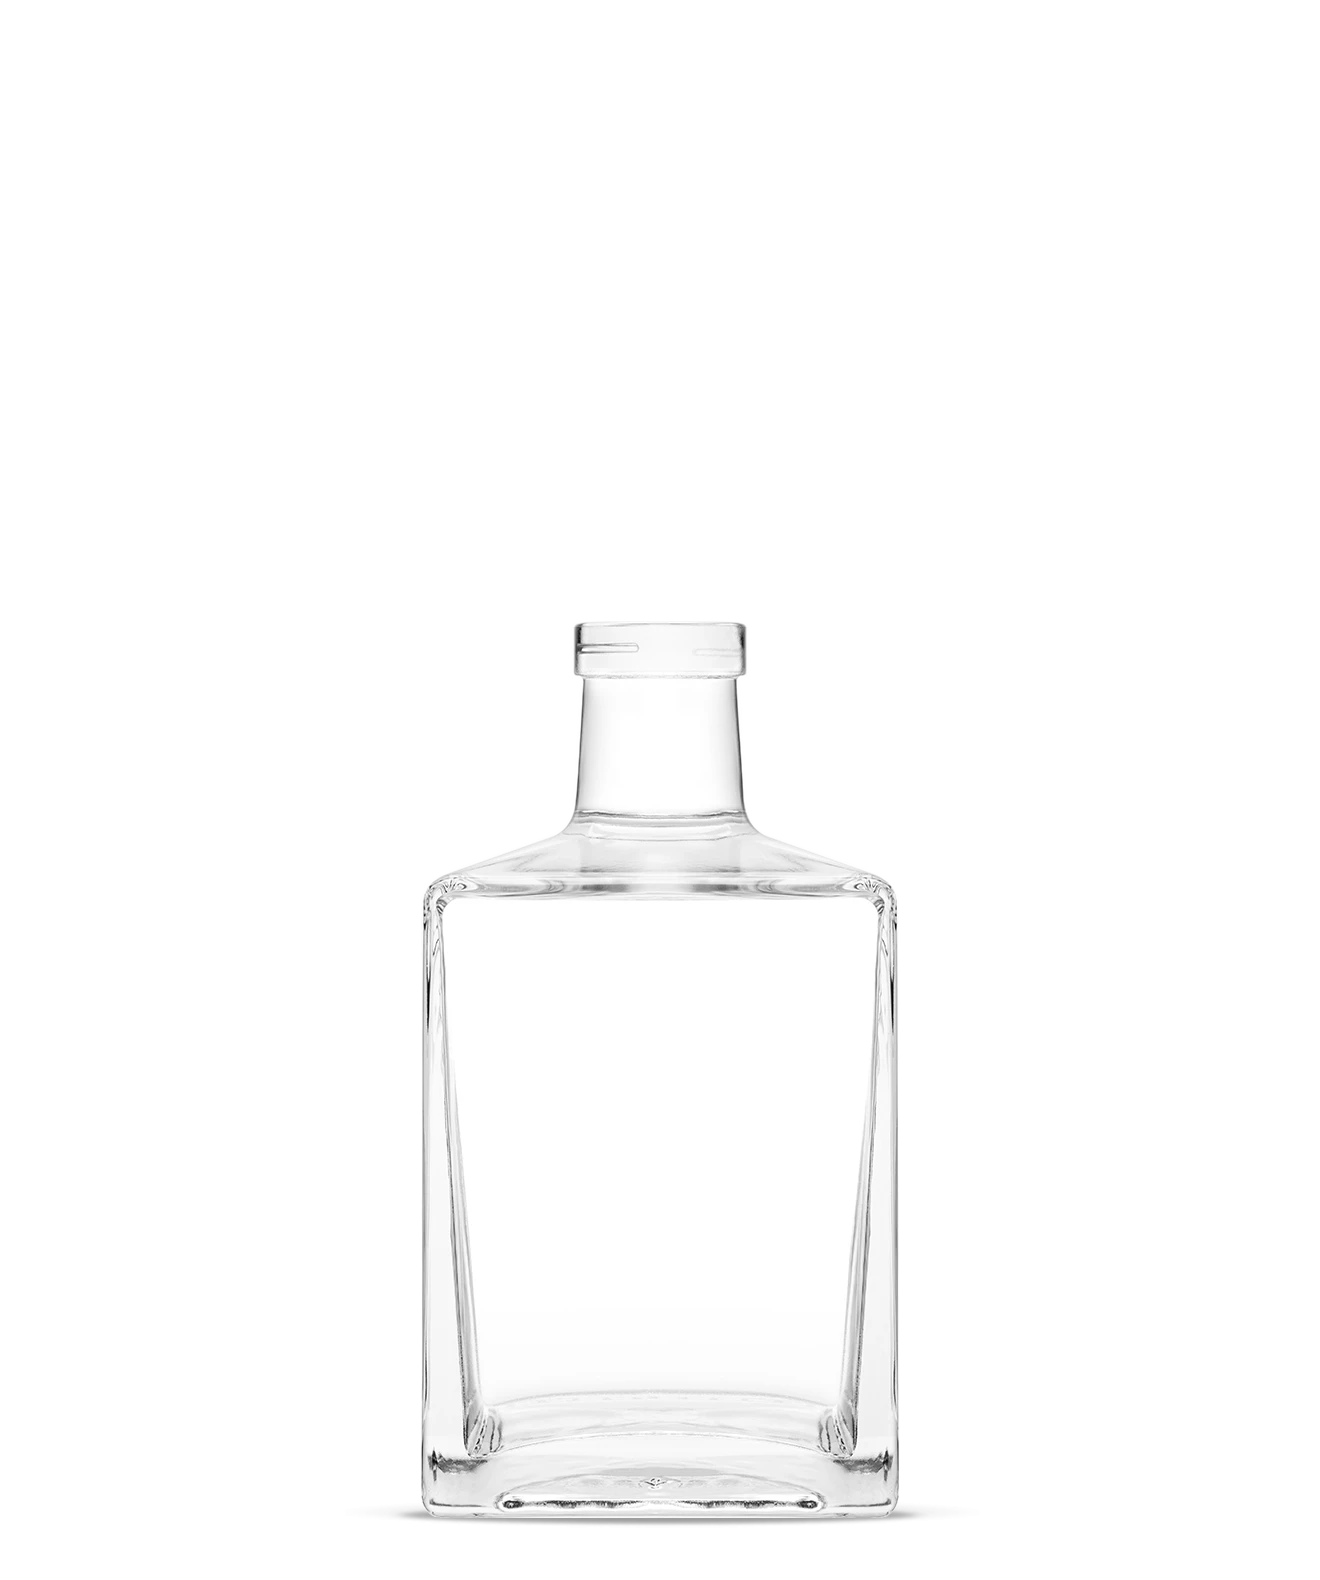 pamela-eco-spirits-bottles-vetroelite-view